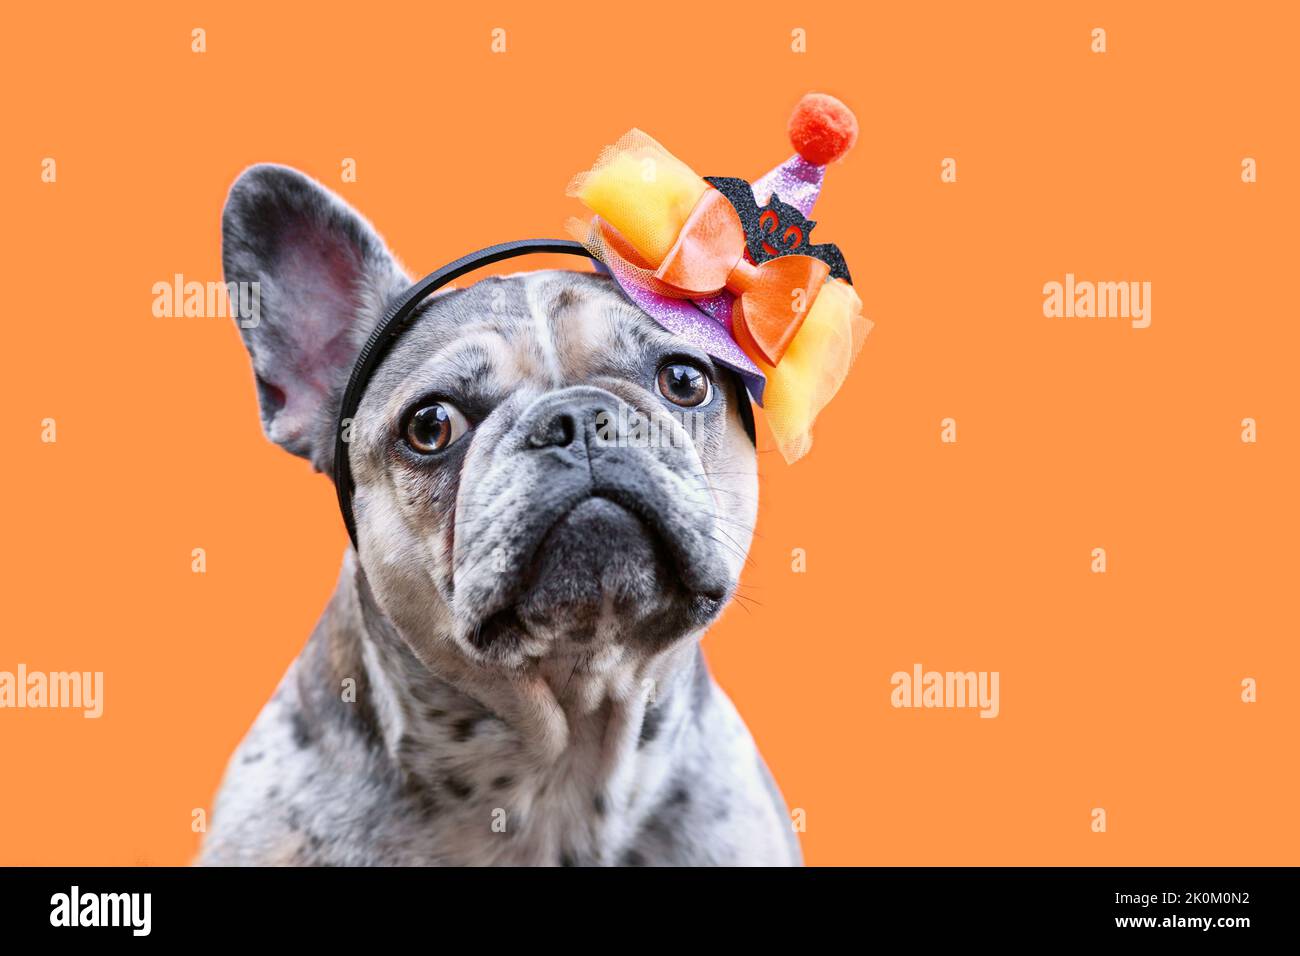 Retrato del perro Bulldog francés merle con sombrero de fiesta de disfraz de Halloween sobre fondo naranja Foto de stock